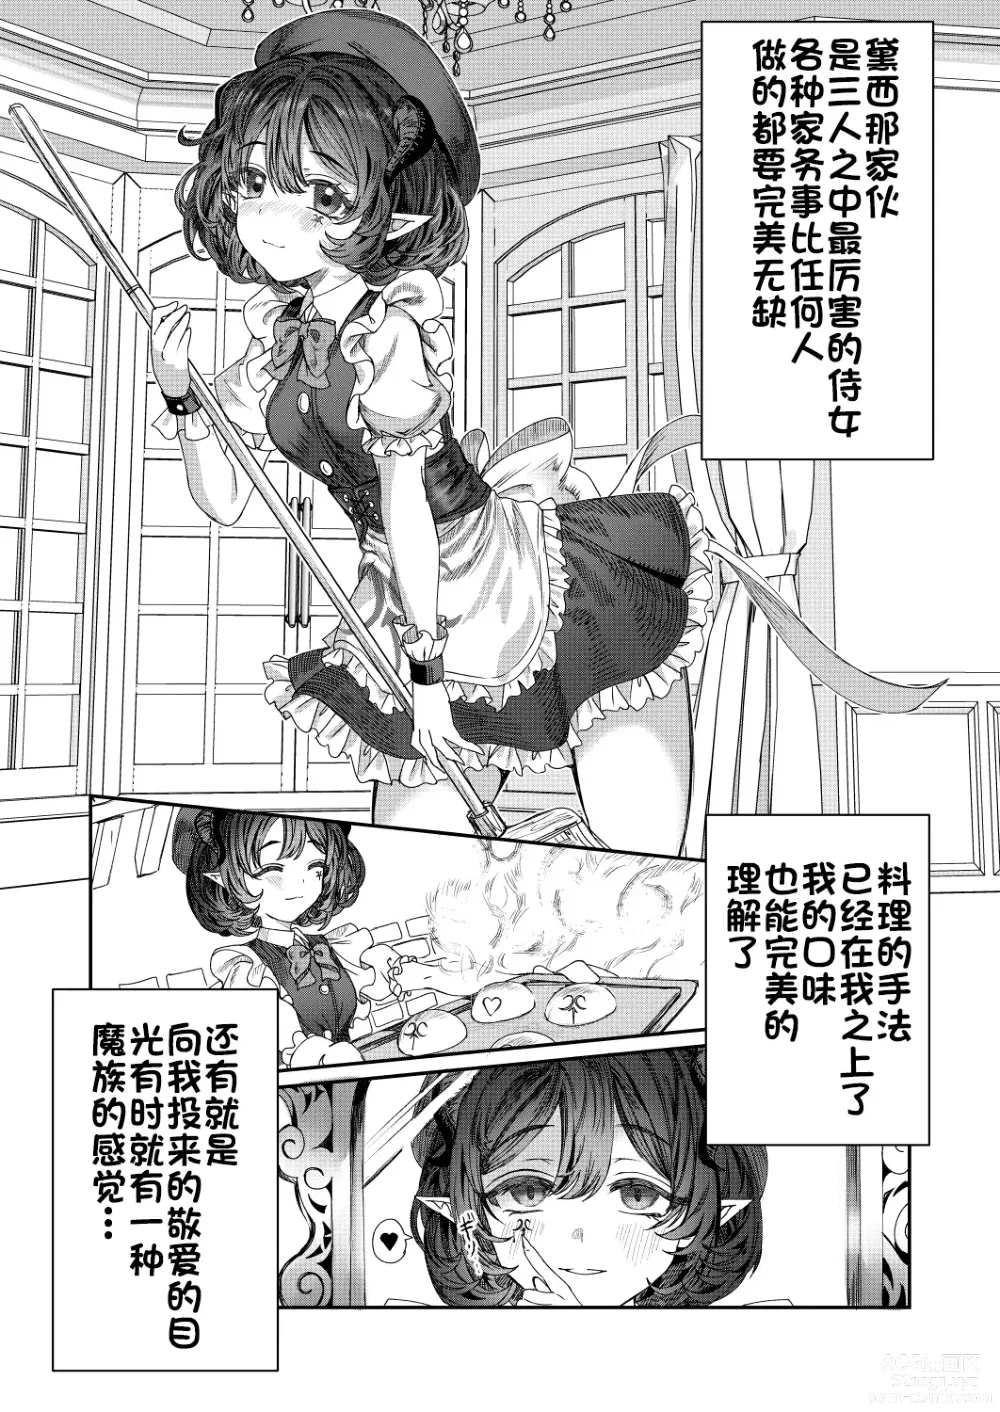 Page 29 of doujinshi Dorei o chokyo shite haremu tsukuru